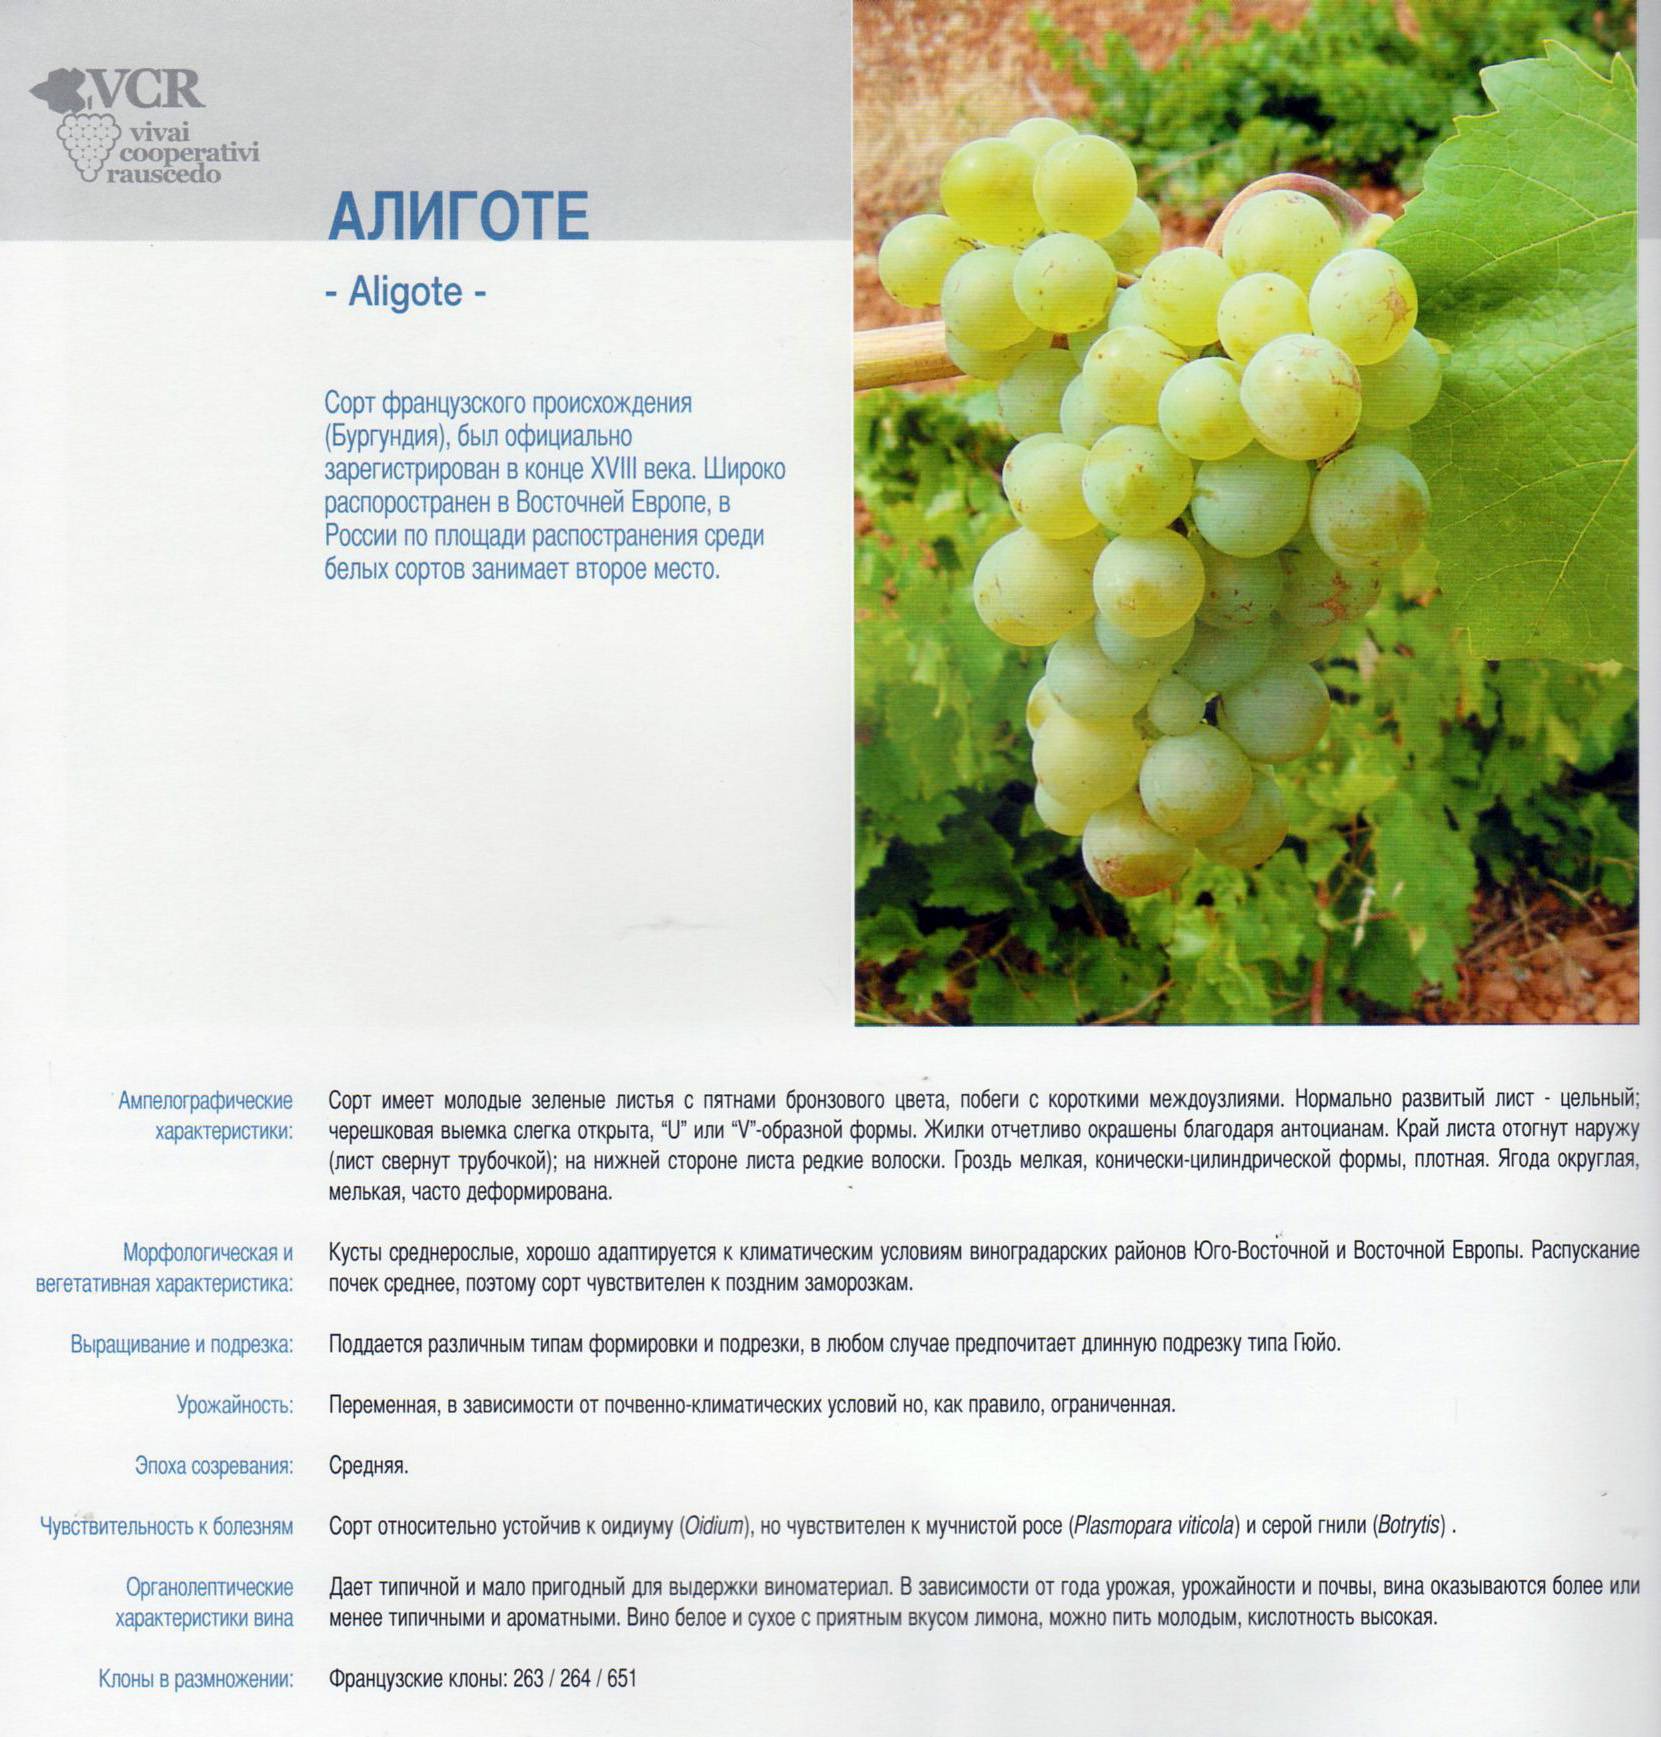 Виноград тимур - розовый и белый: описание сорта, подвиды, характеристики и особенности, фото